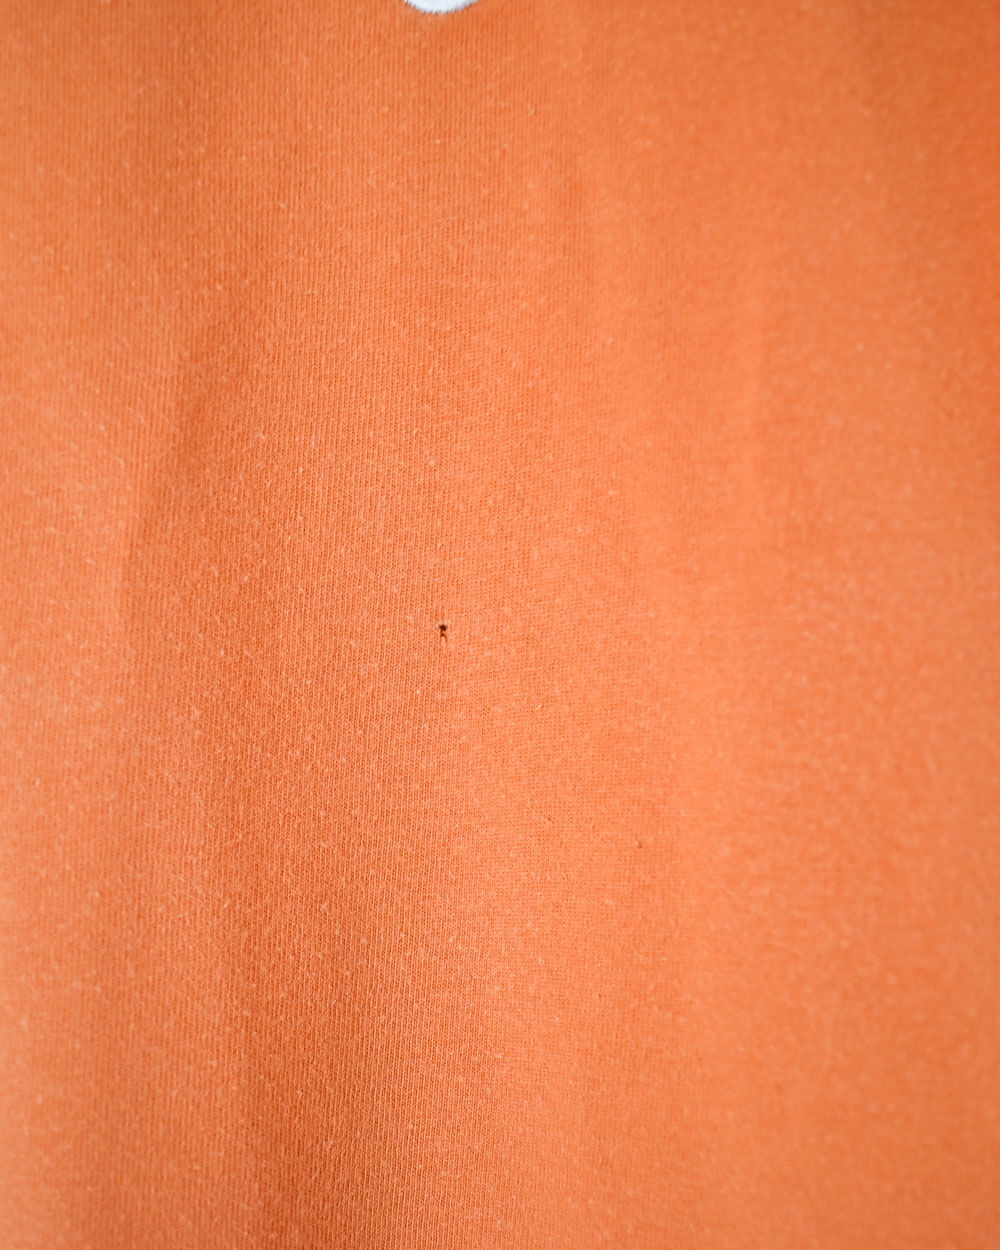 Orange Nike T-Shirt - Medium